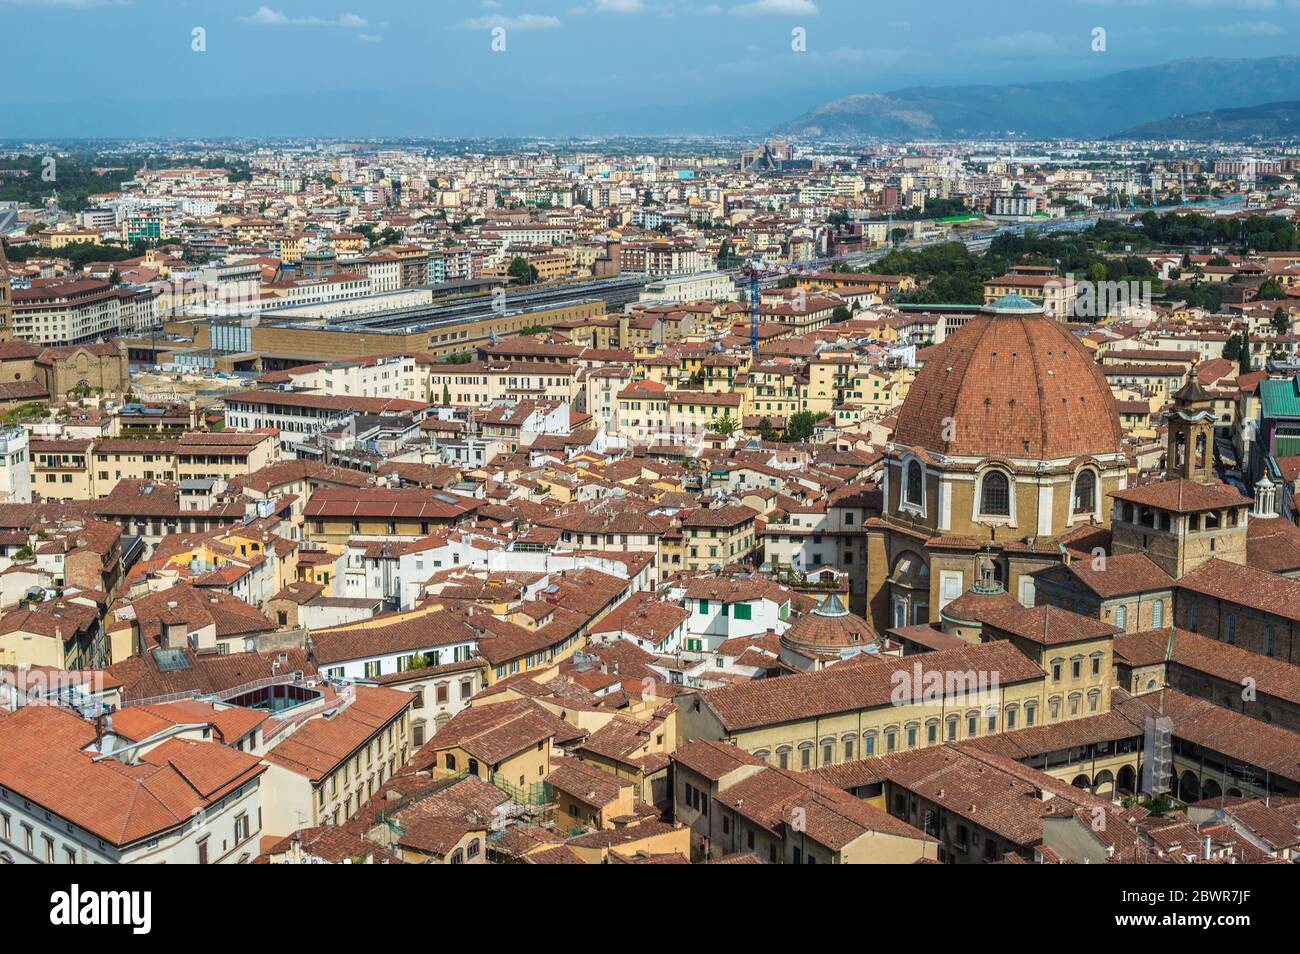 Blick aus der Luft oder aus der Vogelperspektive auf das Stadtbild von Florenz an einem hellen sonnigen Sommertag. Medici Kapelle ist sichtbar. Der Blick ist vom Glockenturm der Kathedrale von Florenz. Stockfoto